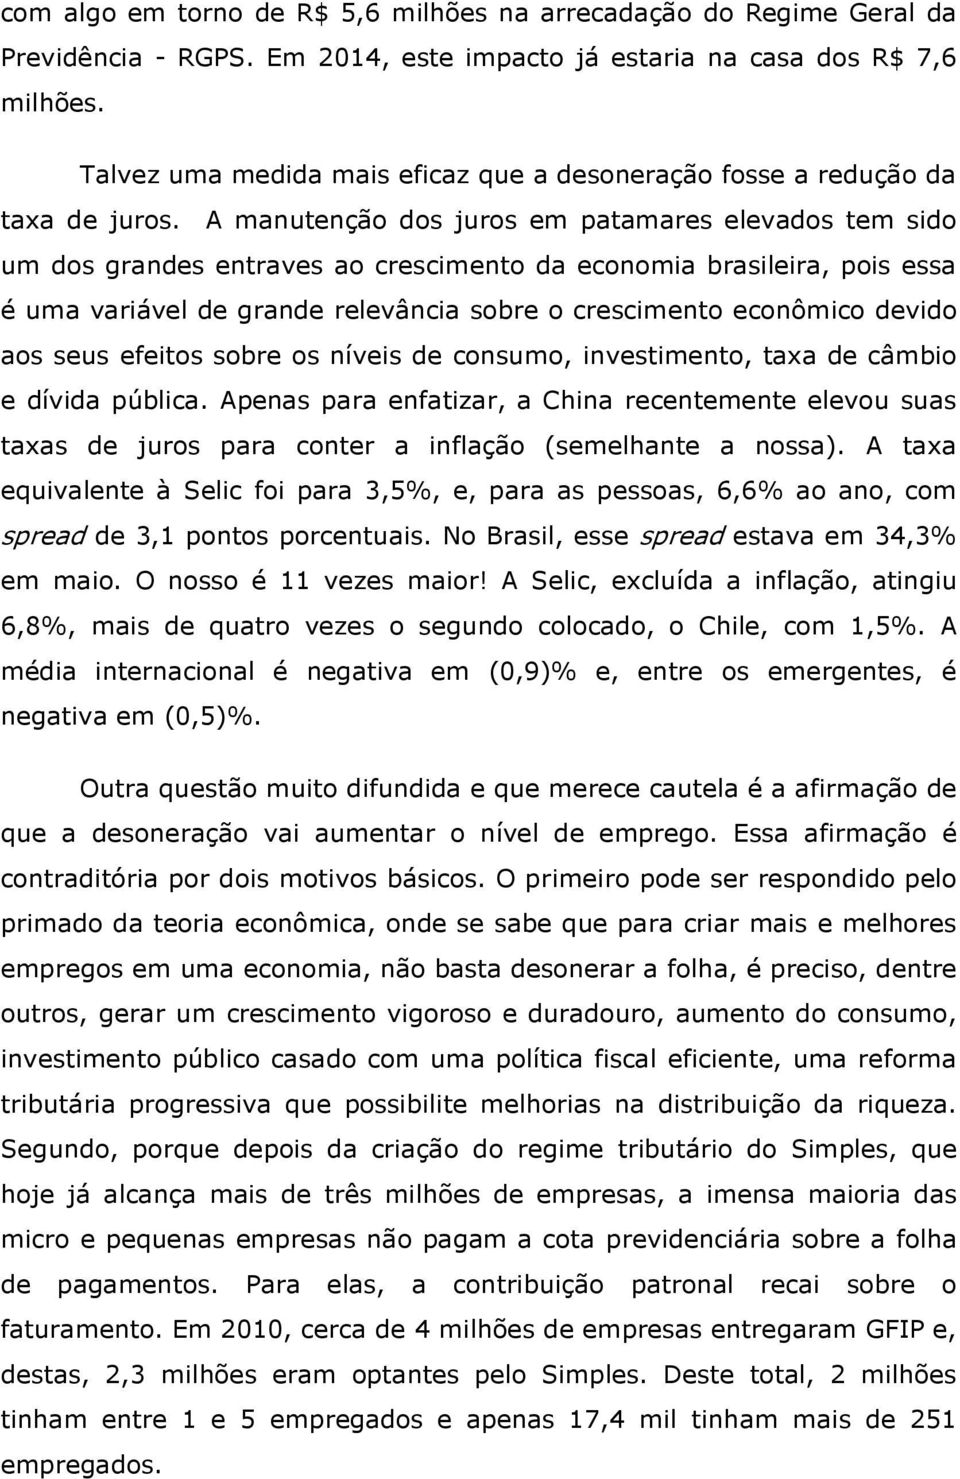 A manutenção dos juros em patamares elevados tem sido um dos grandes entraves ao crescimento da economia brasileira, pois essa é uma variável de grande relevância sobre o crescimento econômico devido